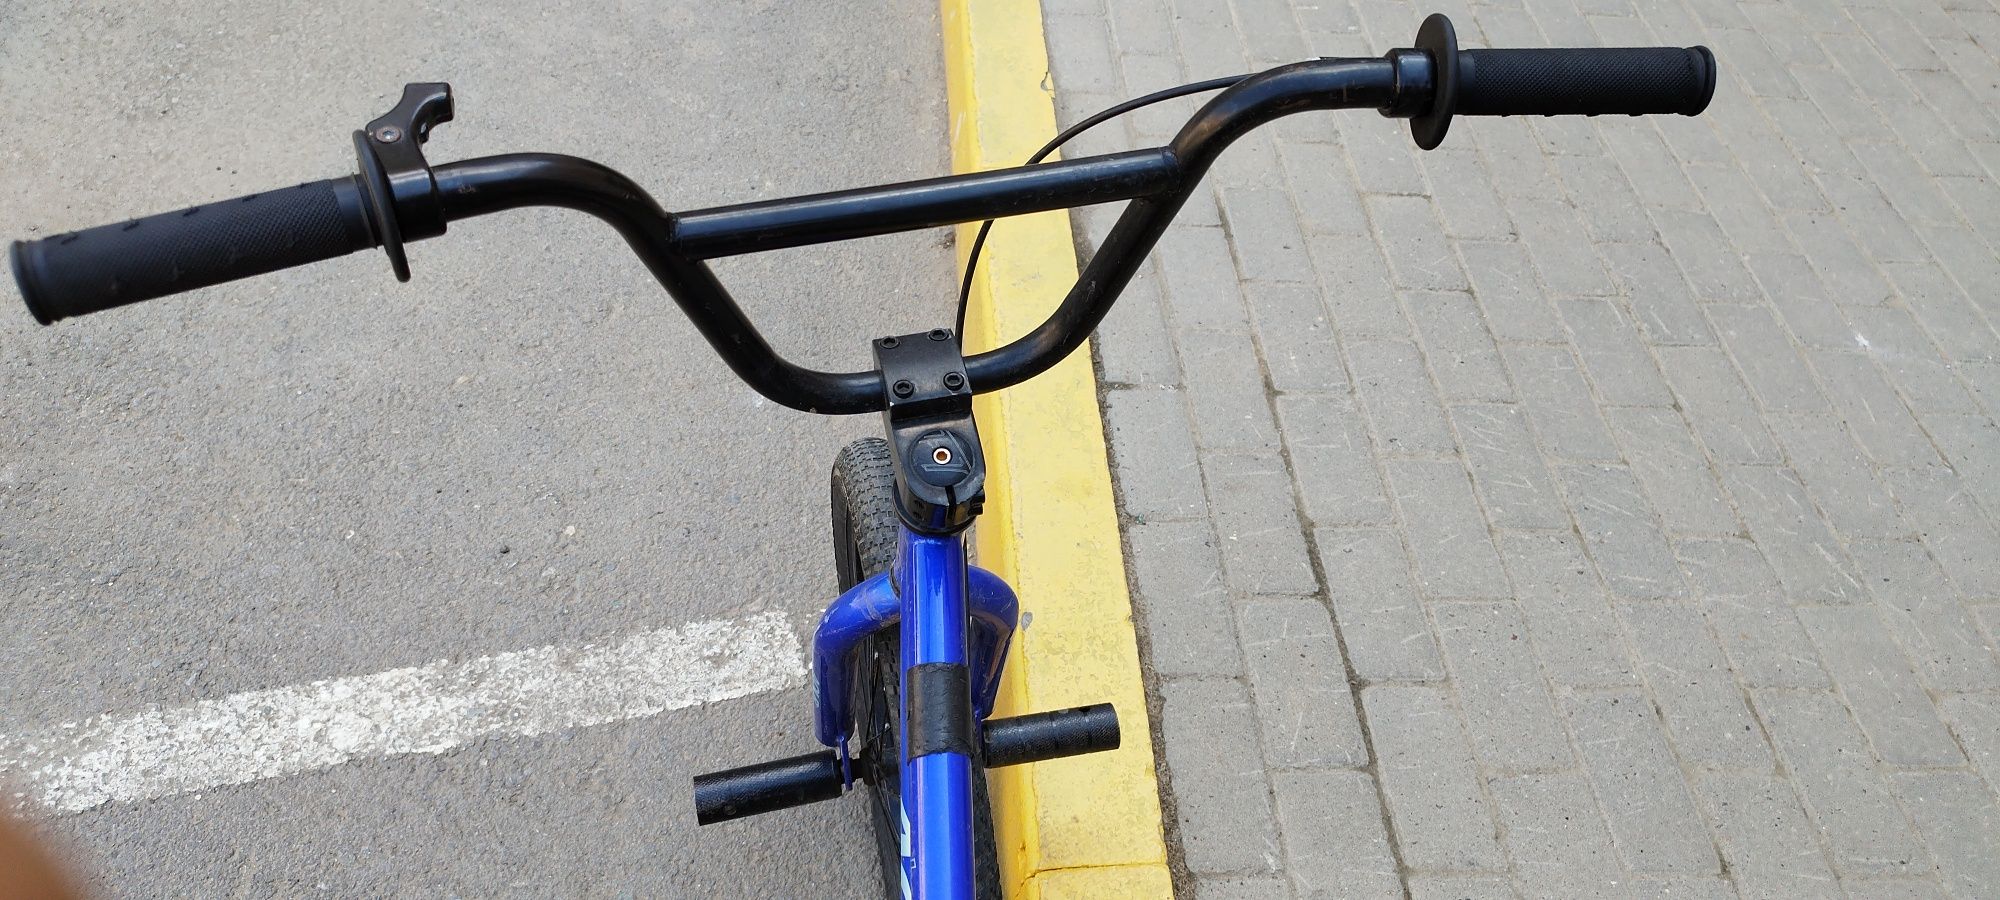 BMX велосипед б/уобмен не предлагать